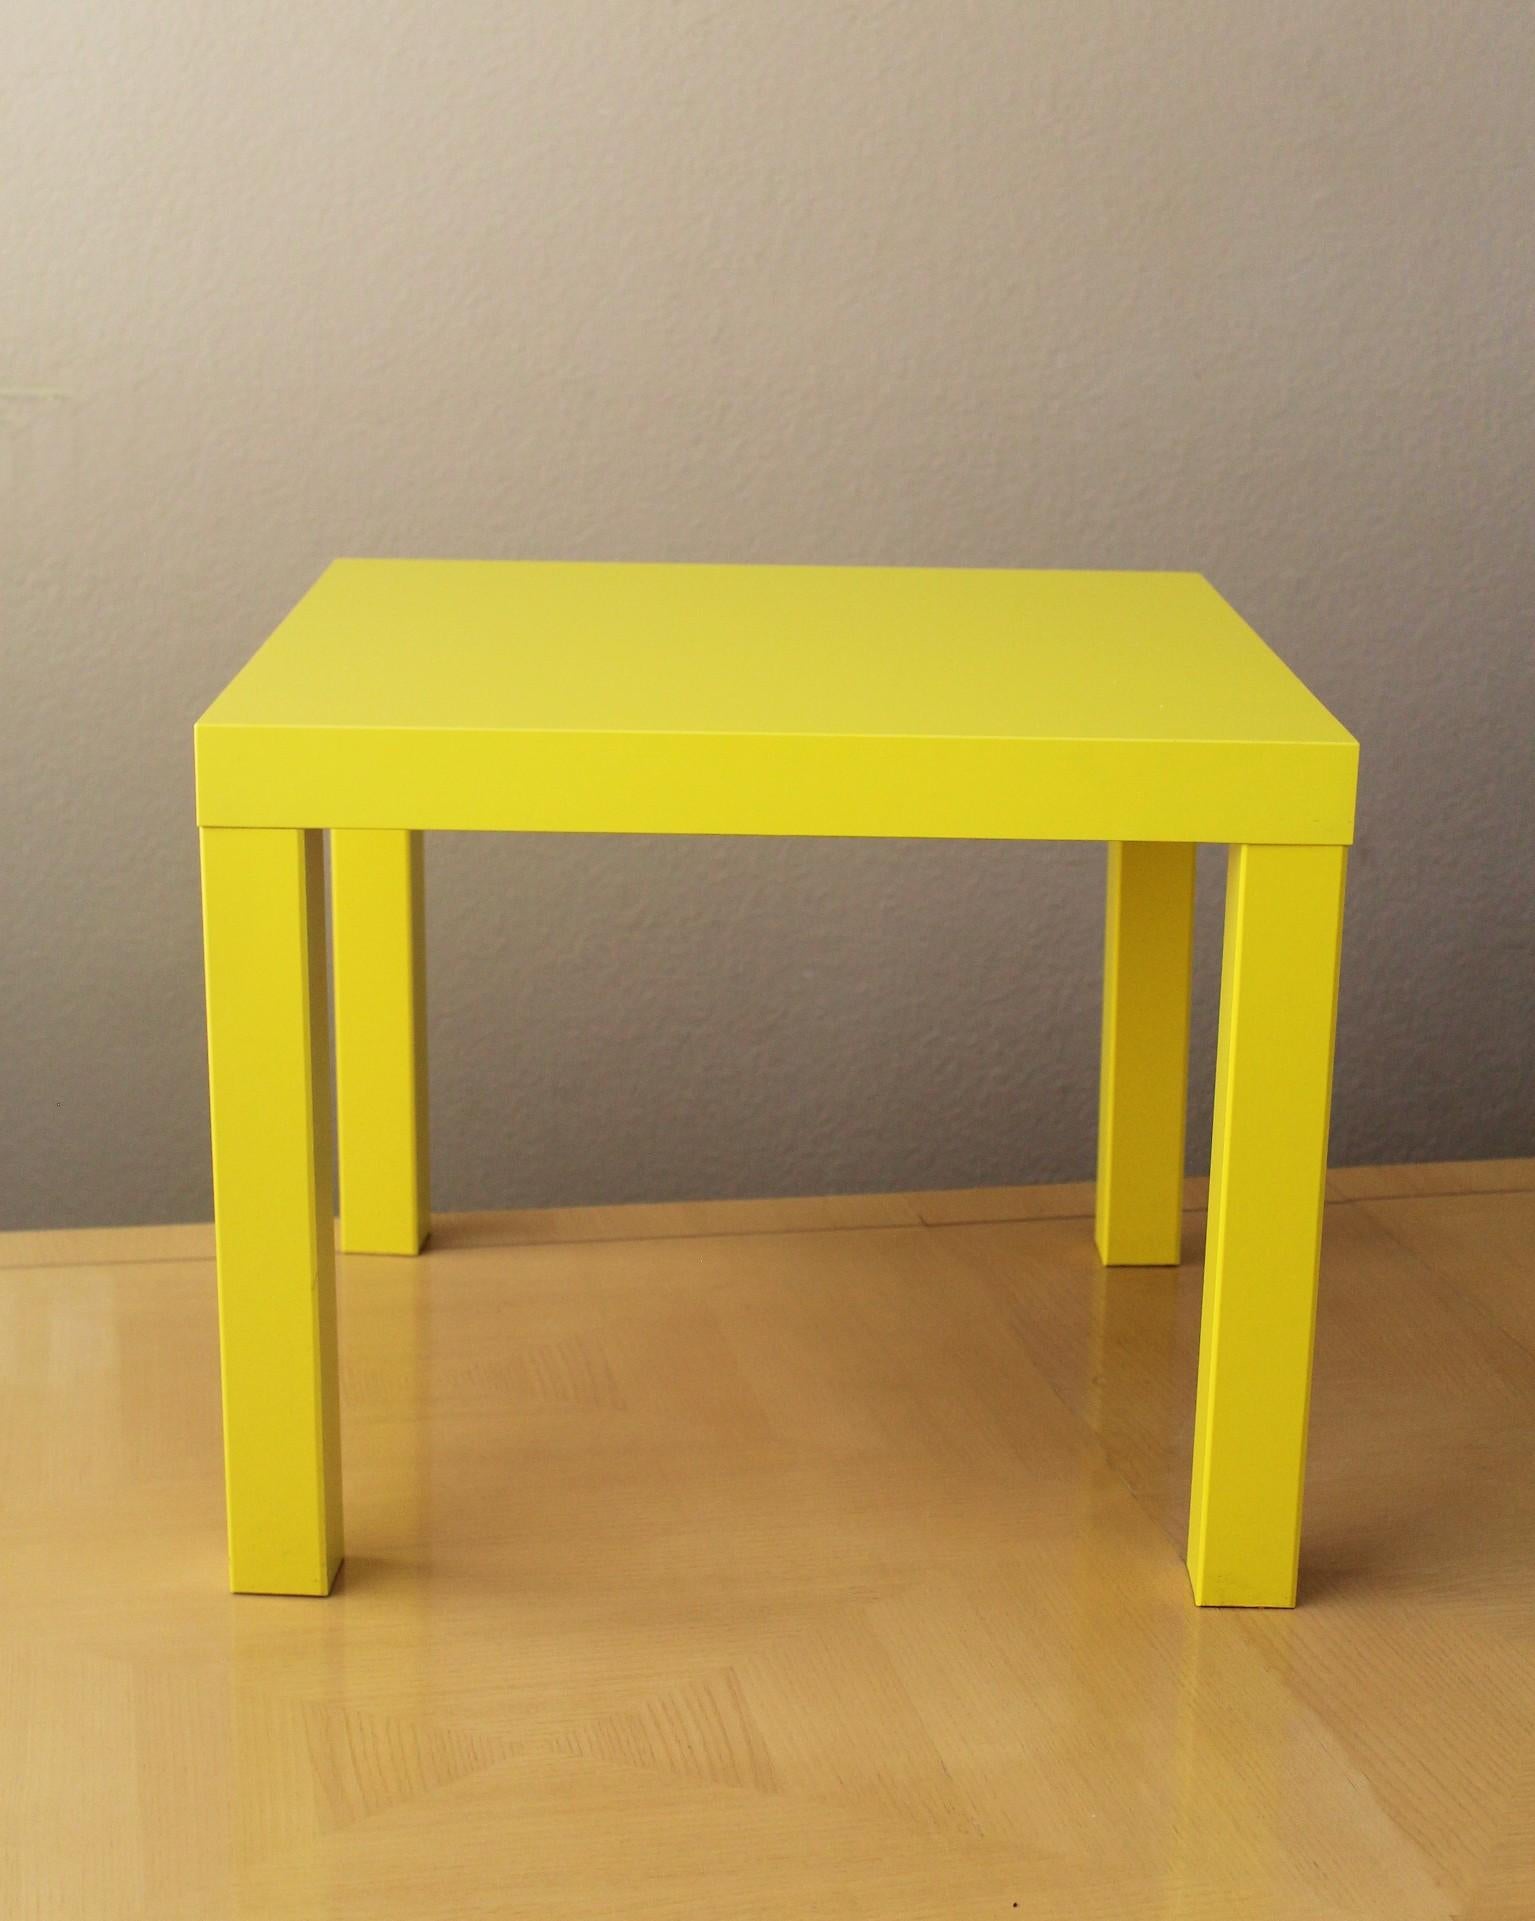 Rare !

Ikea LACK
Tables d'appoint

Fabriqué en Pologne
1999

Couleur jaune convoitée et abandonnée !

Voici une paire de tables LACK d'Ikea datant d'un quart de siècle et datant de la première année 1999, dans la couleur JAUNE tant convoitée. Ces